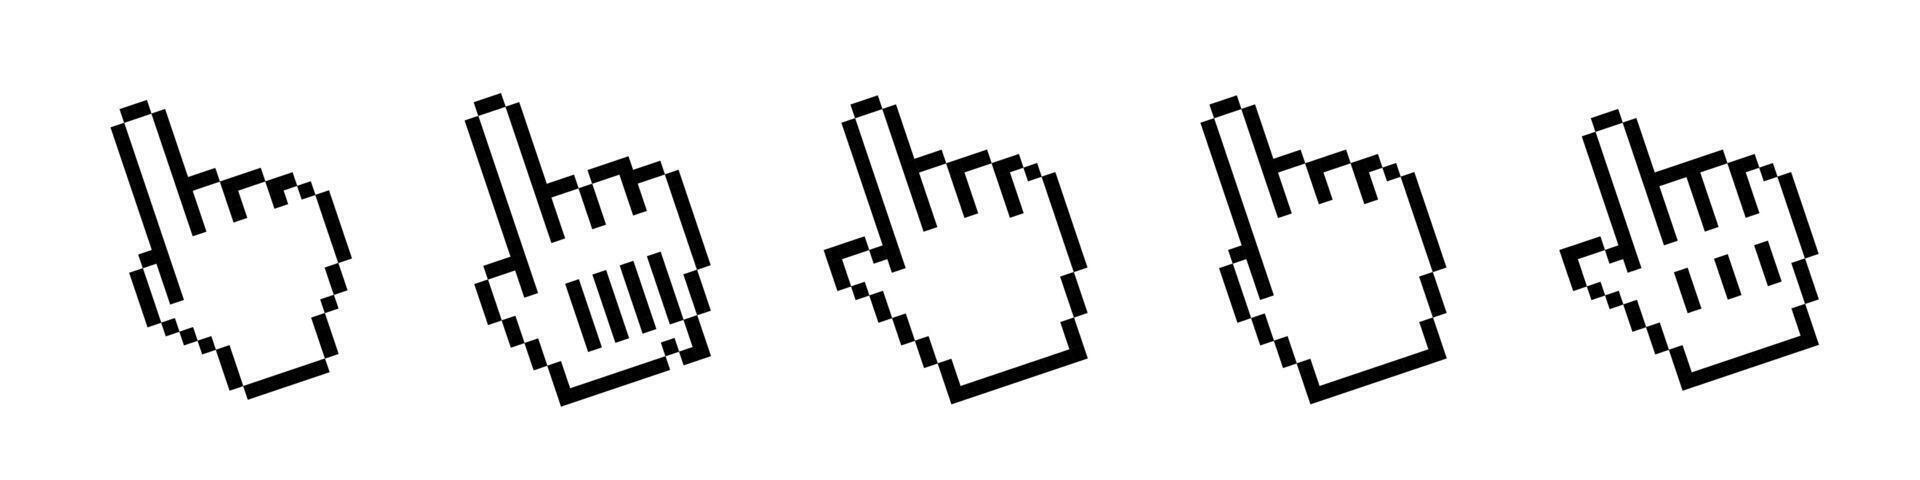 Pixel cursor icons. Arrow cursor in pixel style. Hand cursor vector